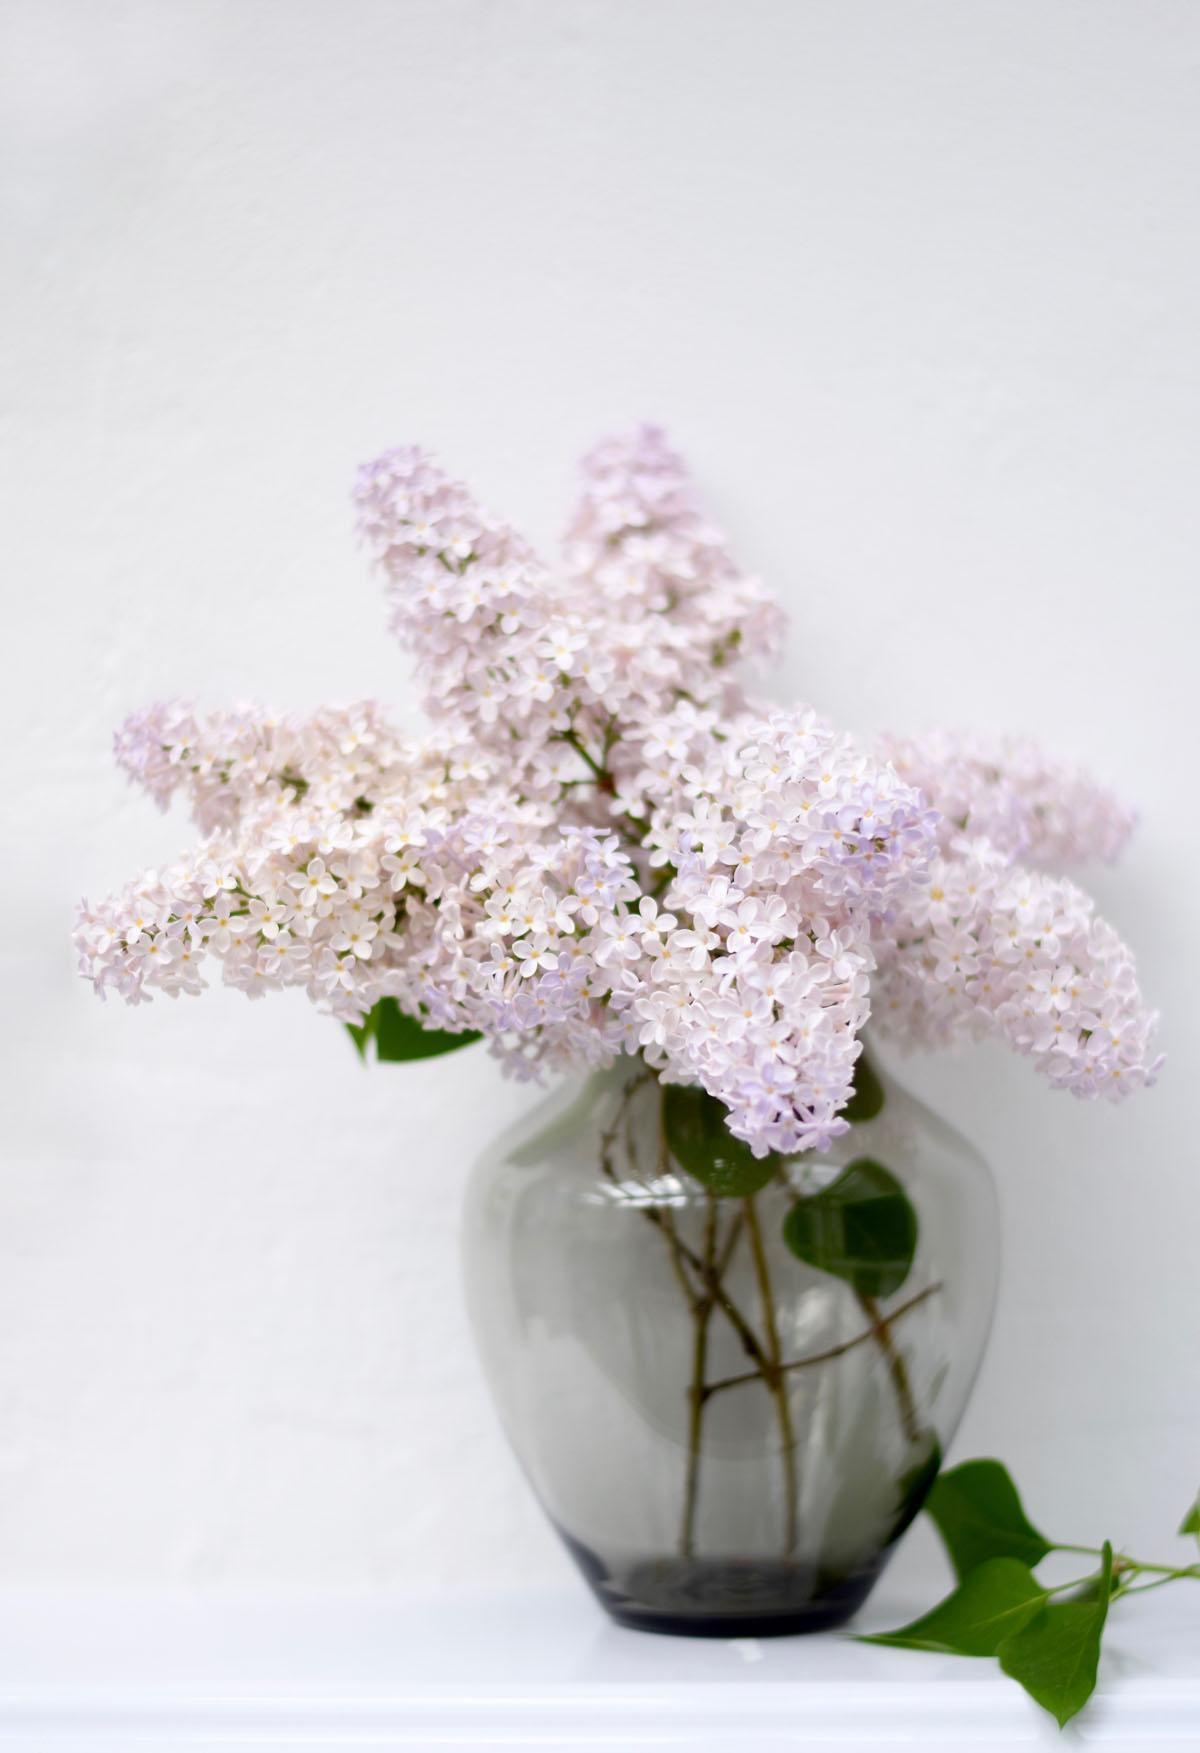 Mein Gartenflieder ist von zartem Lila ins Weiß-Rosé gewechselt. Schön!
#blumenliebe #Flieder #couchstyle